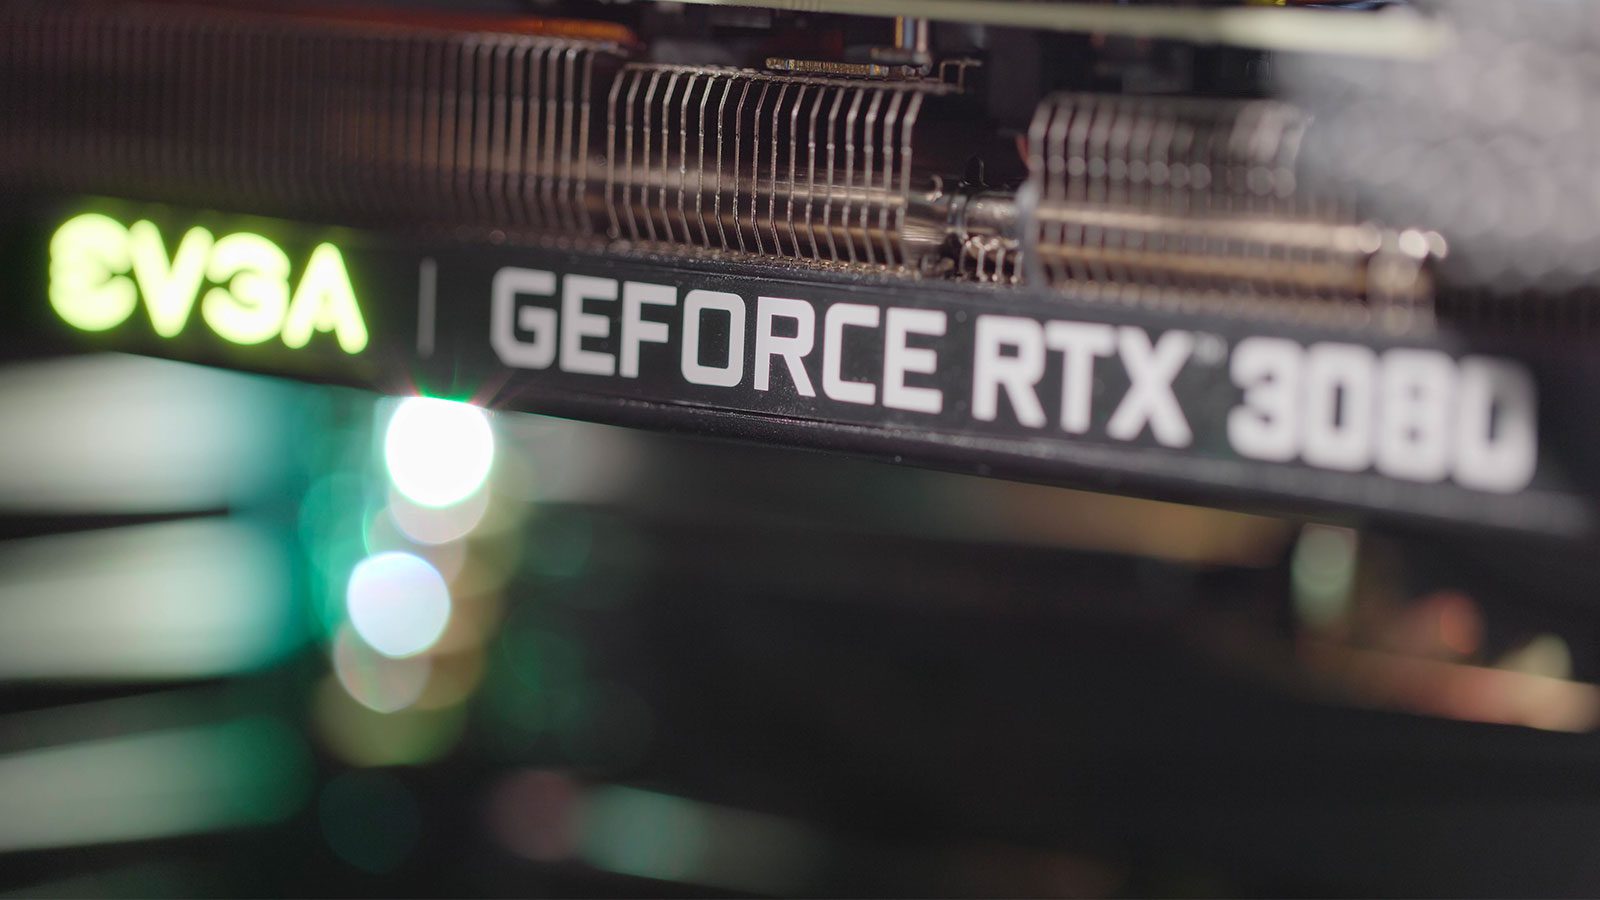 GeForce RTX 3080, det ultimata grafikkortet till ett överkomligt pris!